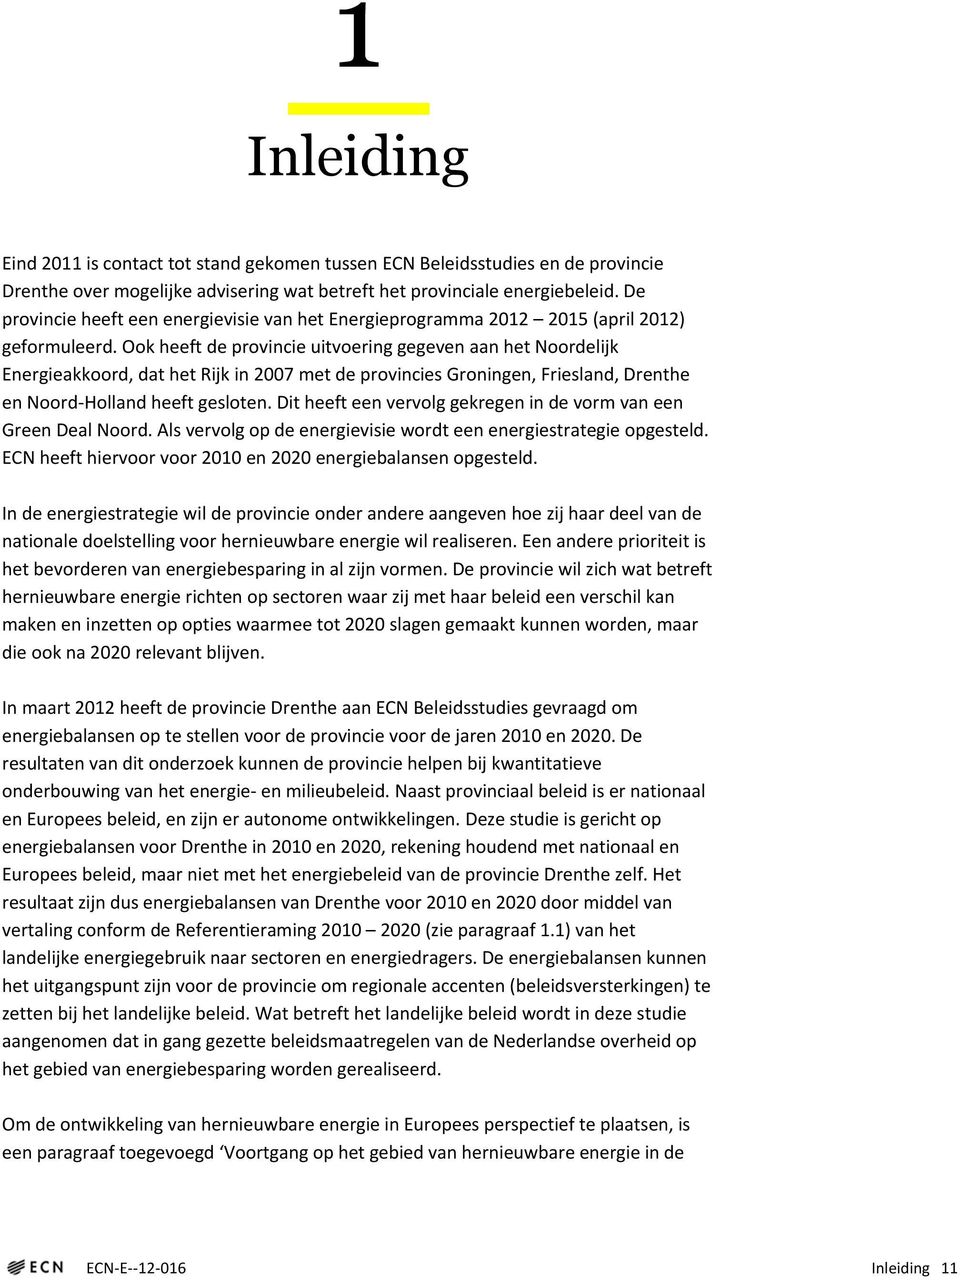 Ook heeft de provincie uitvoering gegeven aan het Noordelijk Energieakkoord, dat het Rijk in 2007 met de provincies Groningen, Friesland, Drenthe en Noord-Holland heeft gesloten.